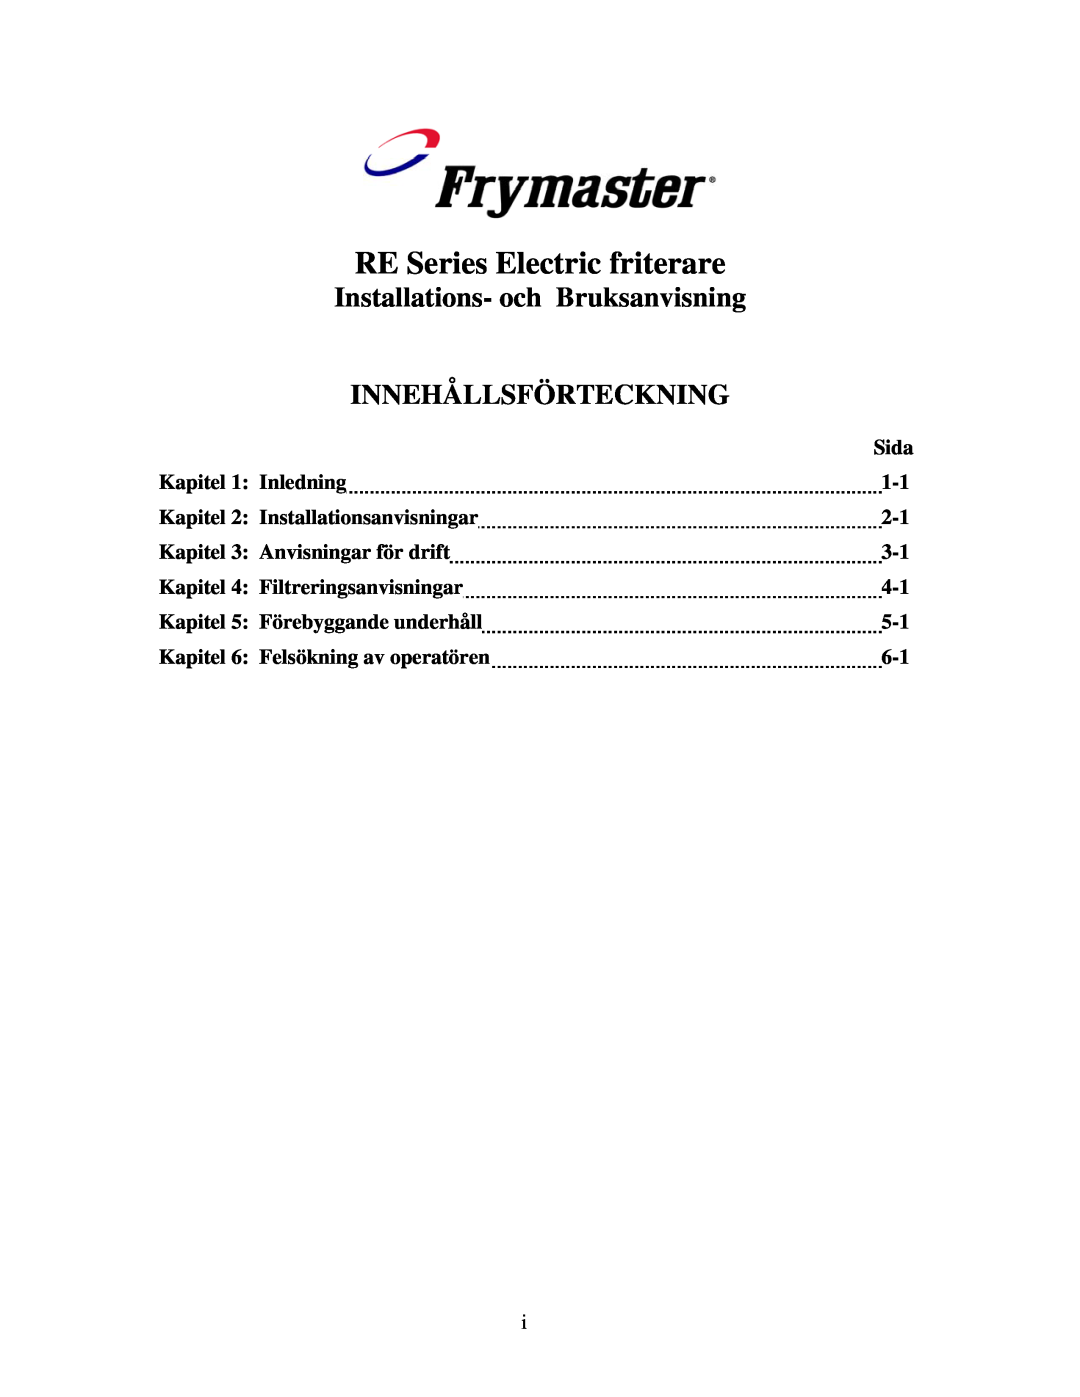 Frymaster manual RE Series Electric friterare, Installations- och Bruksanvisning, Innehållsförteckning 